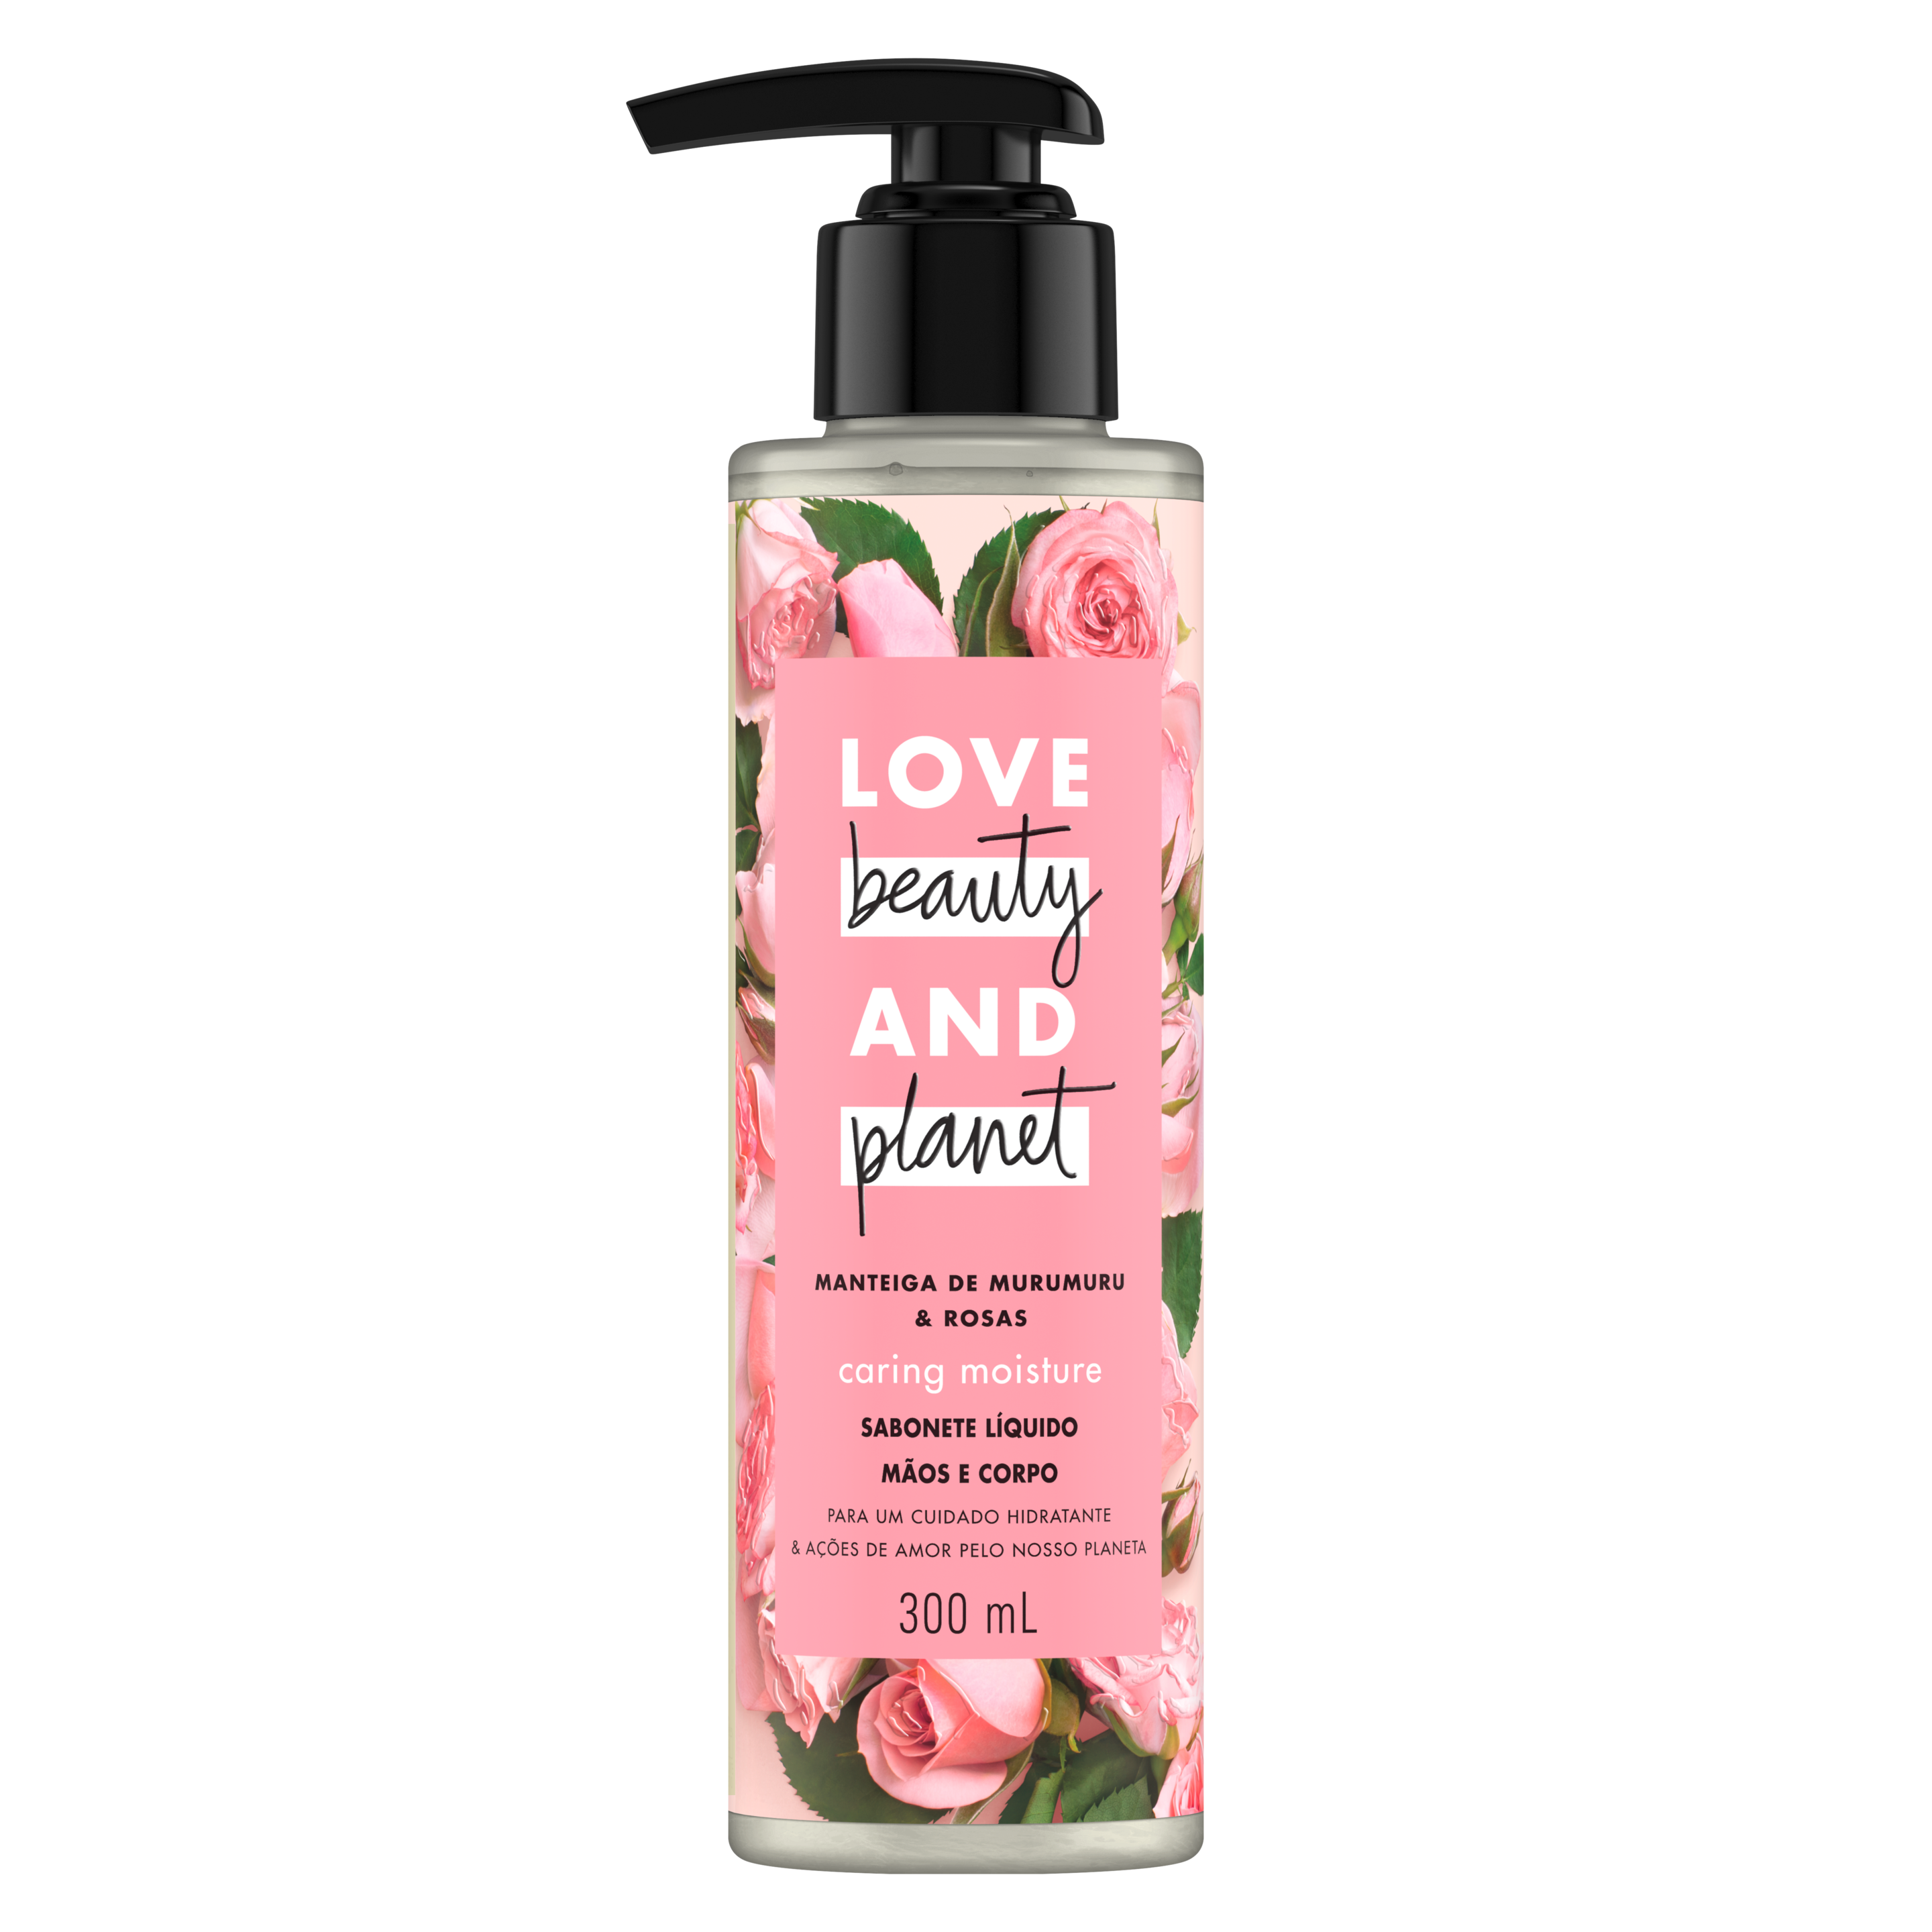 Frente da embalagem do sabonete líquido para o corpo e mãos Love Beauty and Planet manteiga de murumuru & rosas 300 ml Text